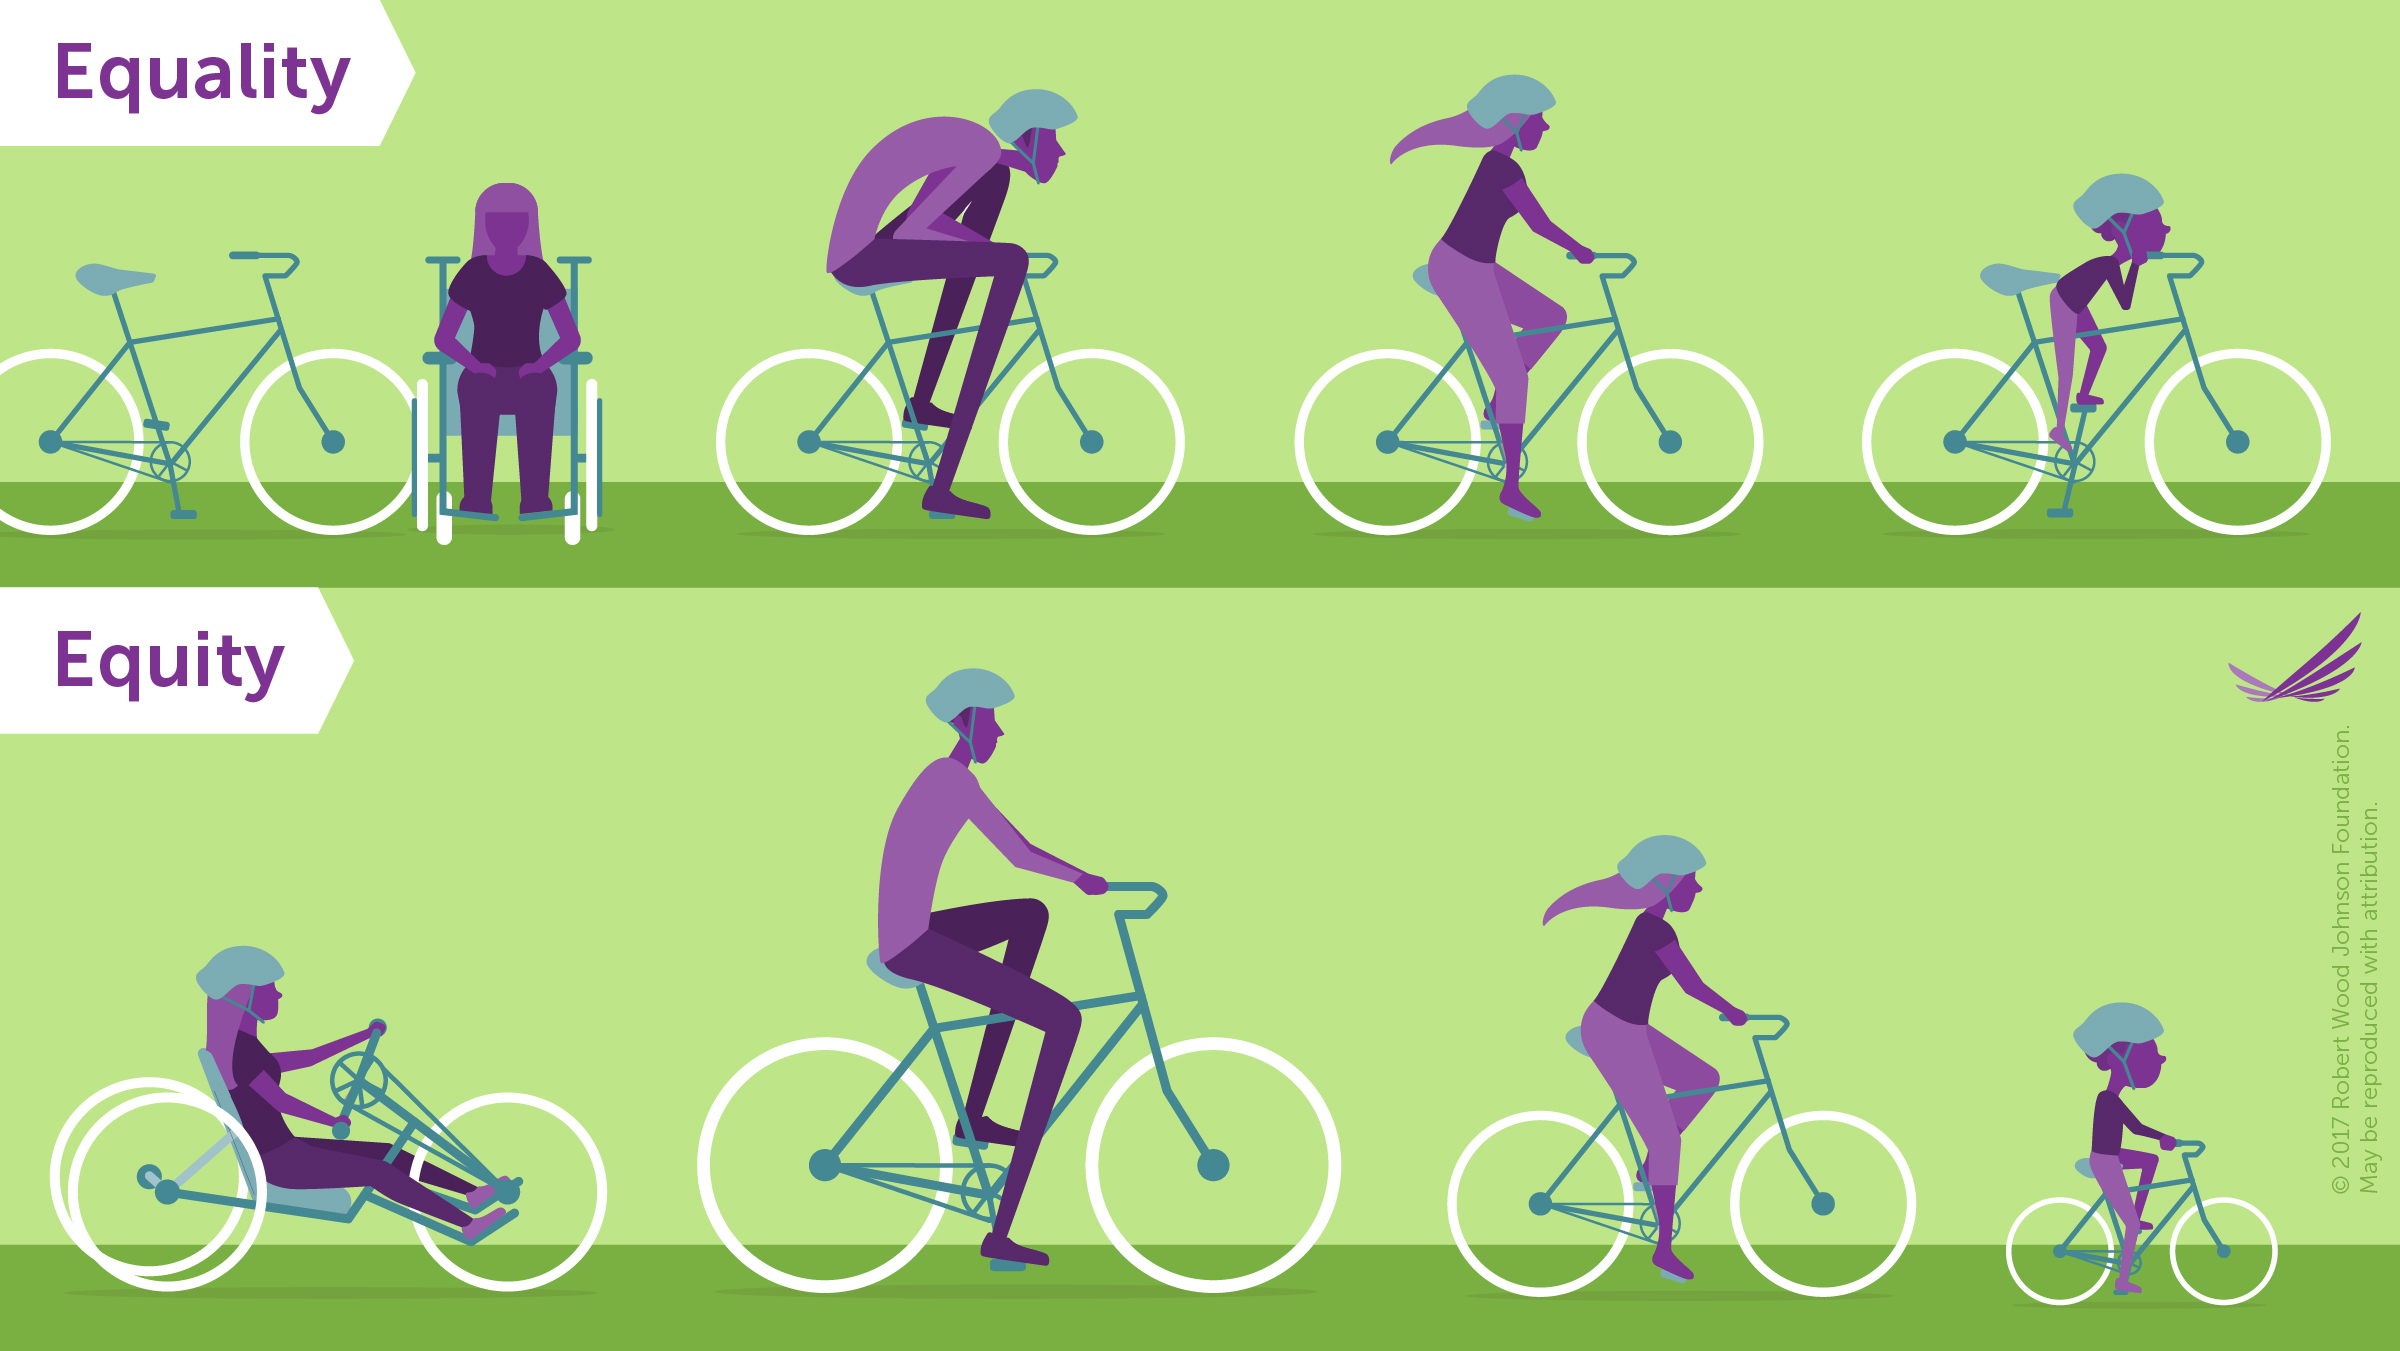 ایکوئٹی اور مساوات کے درمیان فرق کو ظاہر کرنے والی سائیکلوں کی تصویر